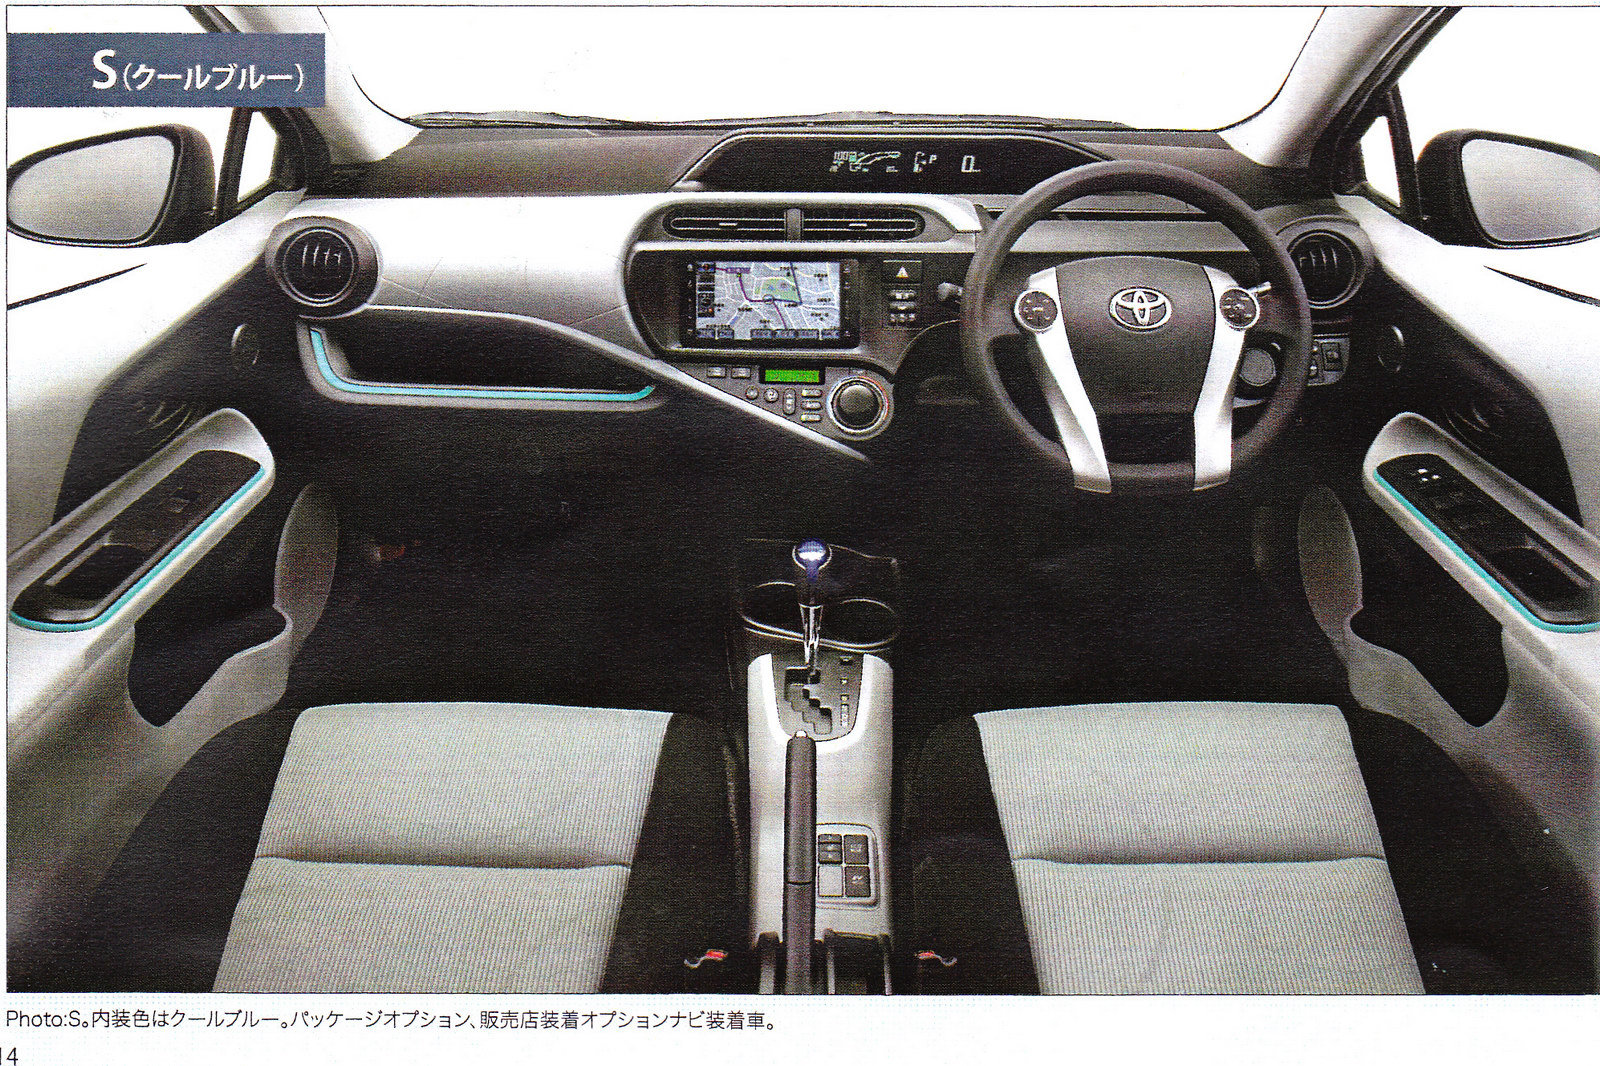 Toyota Prius C va avea premiera oficiala la Salonul Auto Tokyo 2011